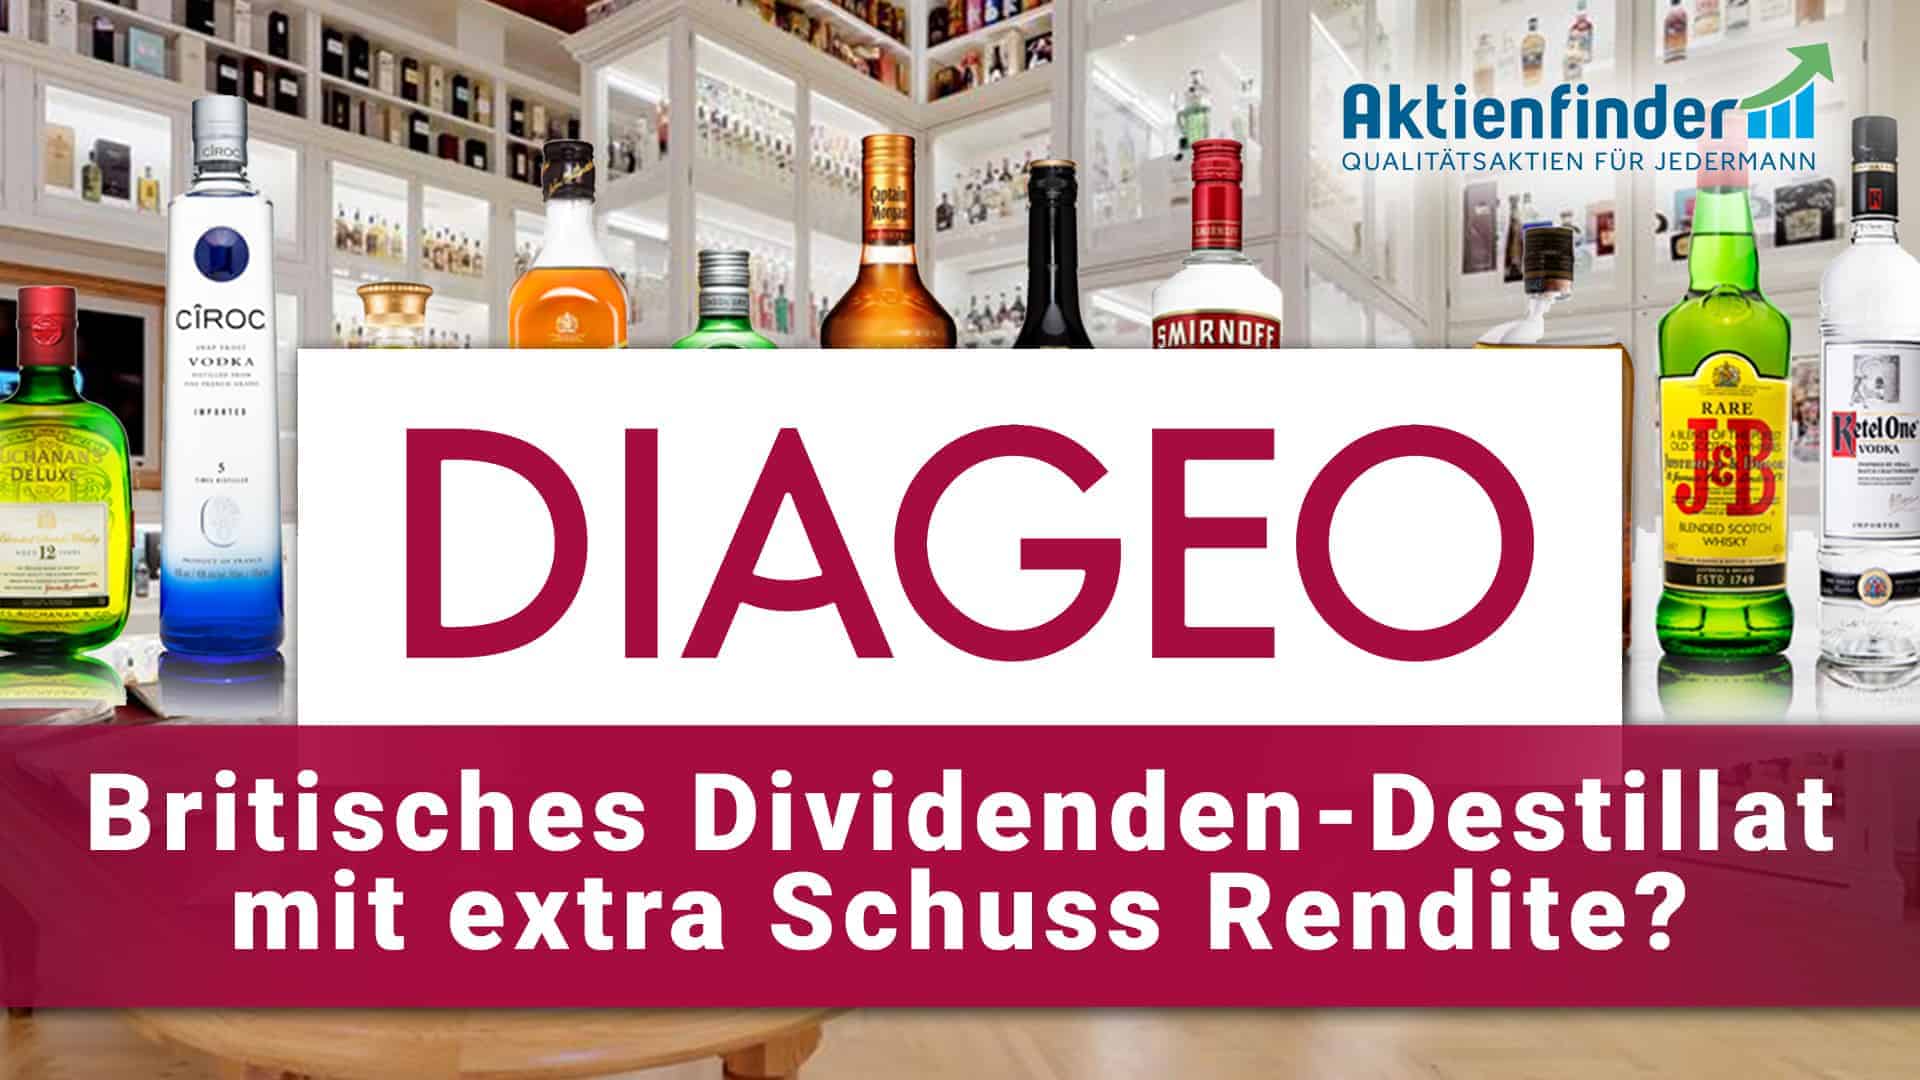 Diageo Aktie - Britisches Dividenden-Destillat mit dem Schuss Rendite